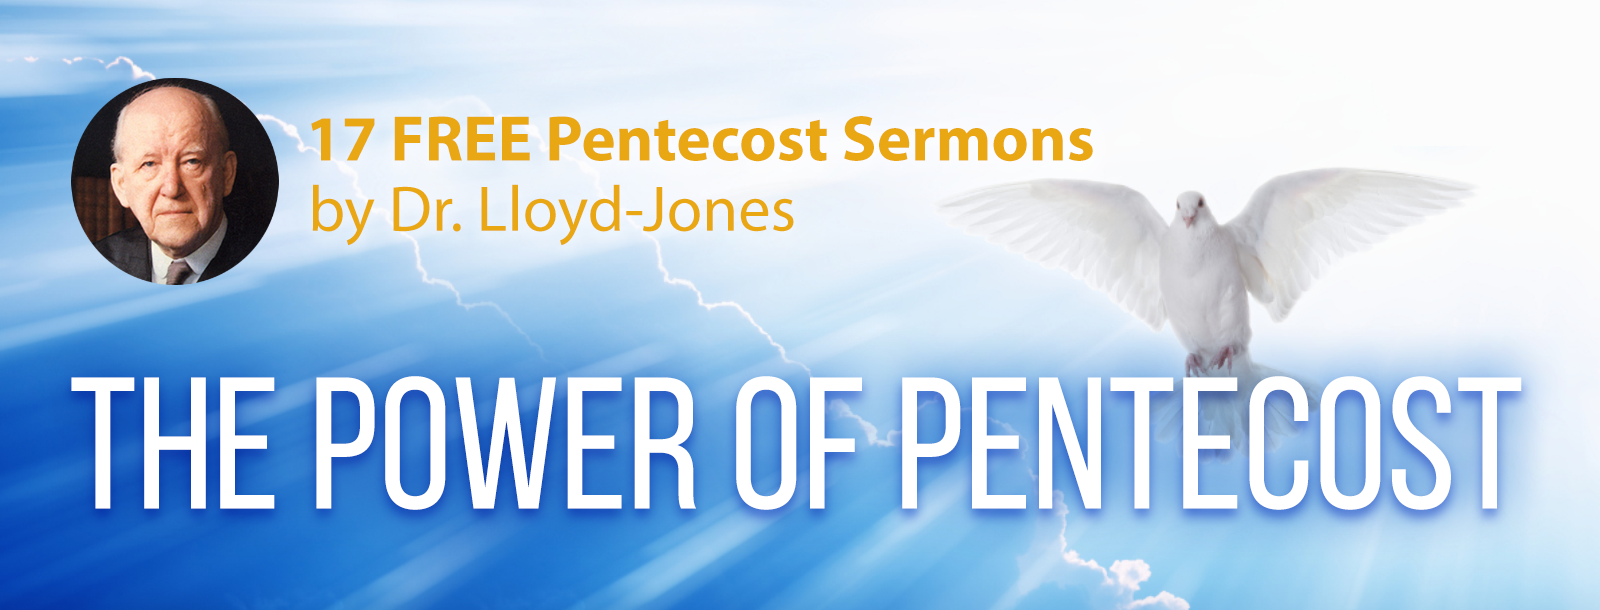 17 FREE Pentecost Sermons by Dr. Martyn Lloyd-Jones - THE POWER OF PENTECOST